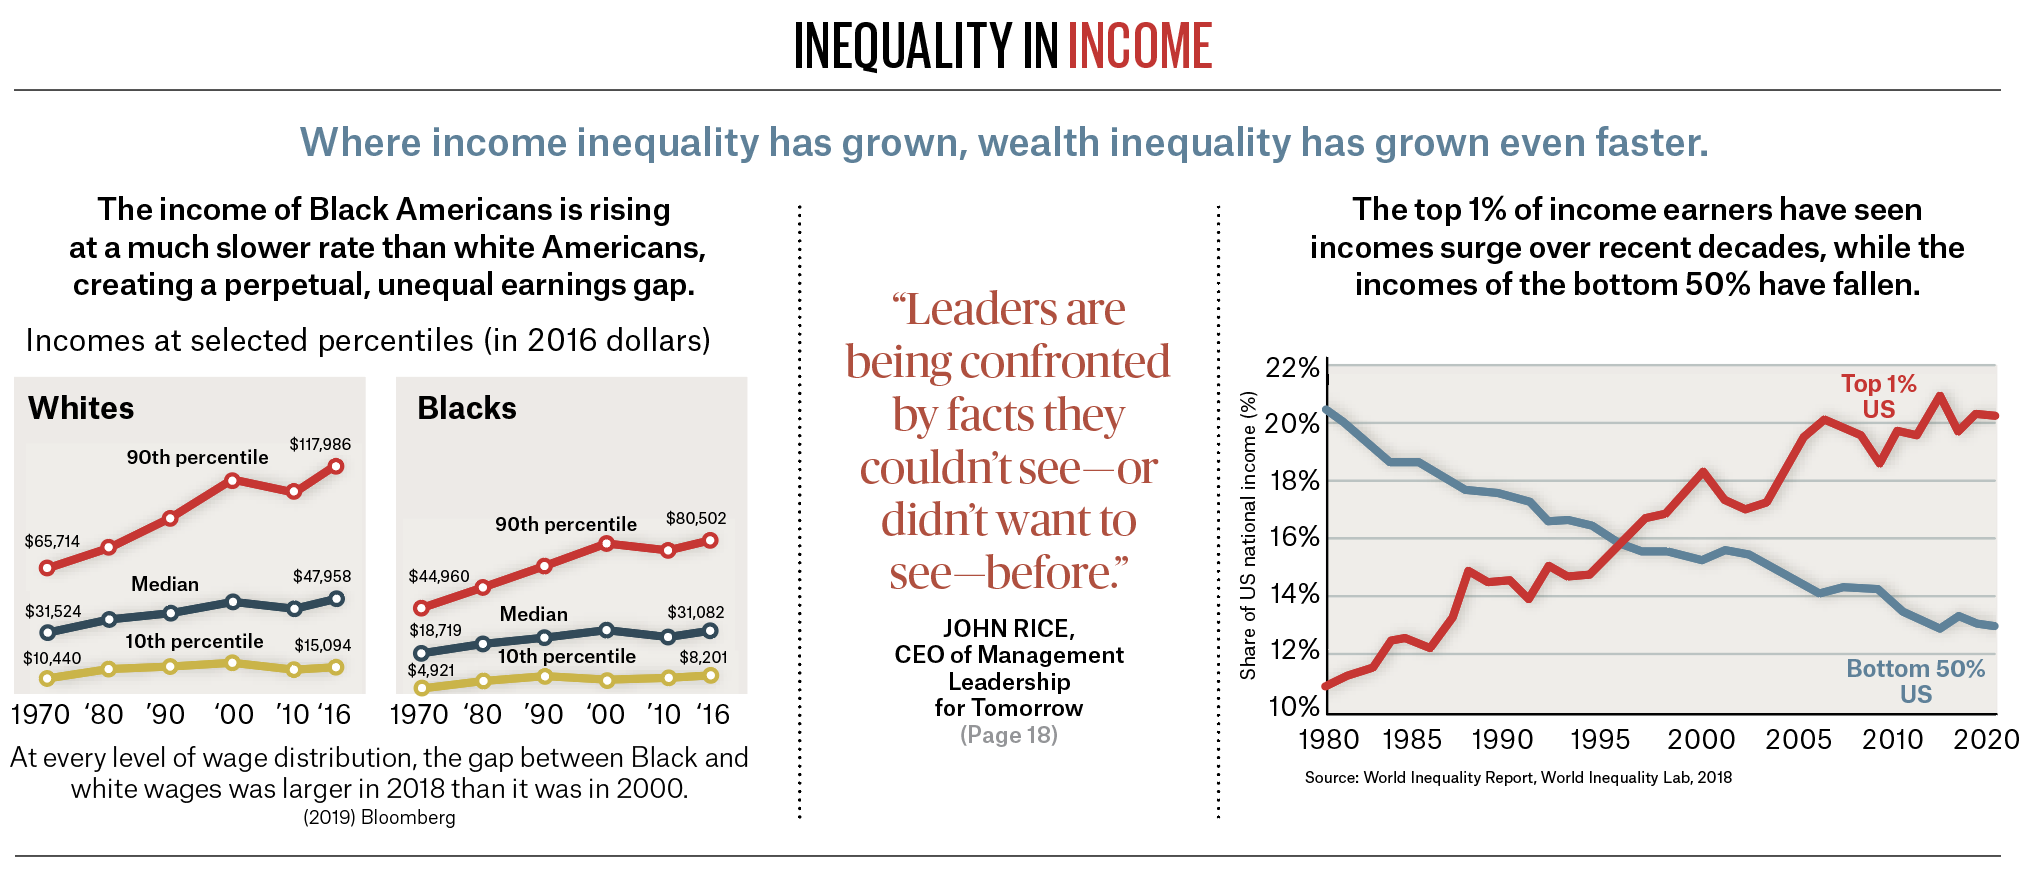 Inequalityinincome